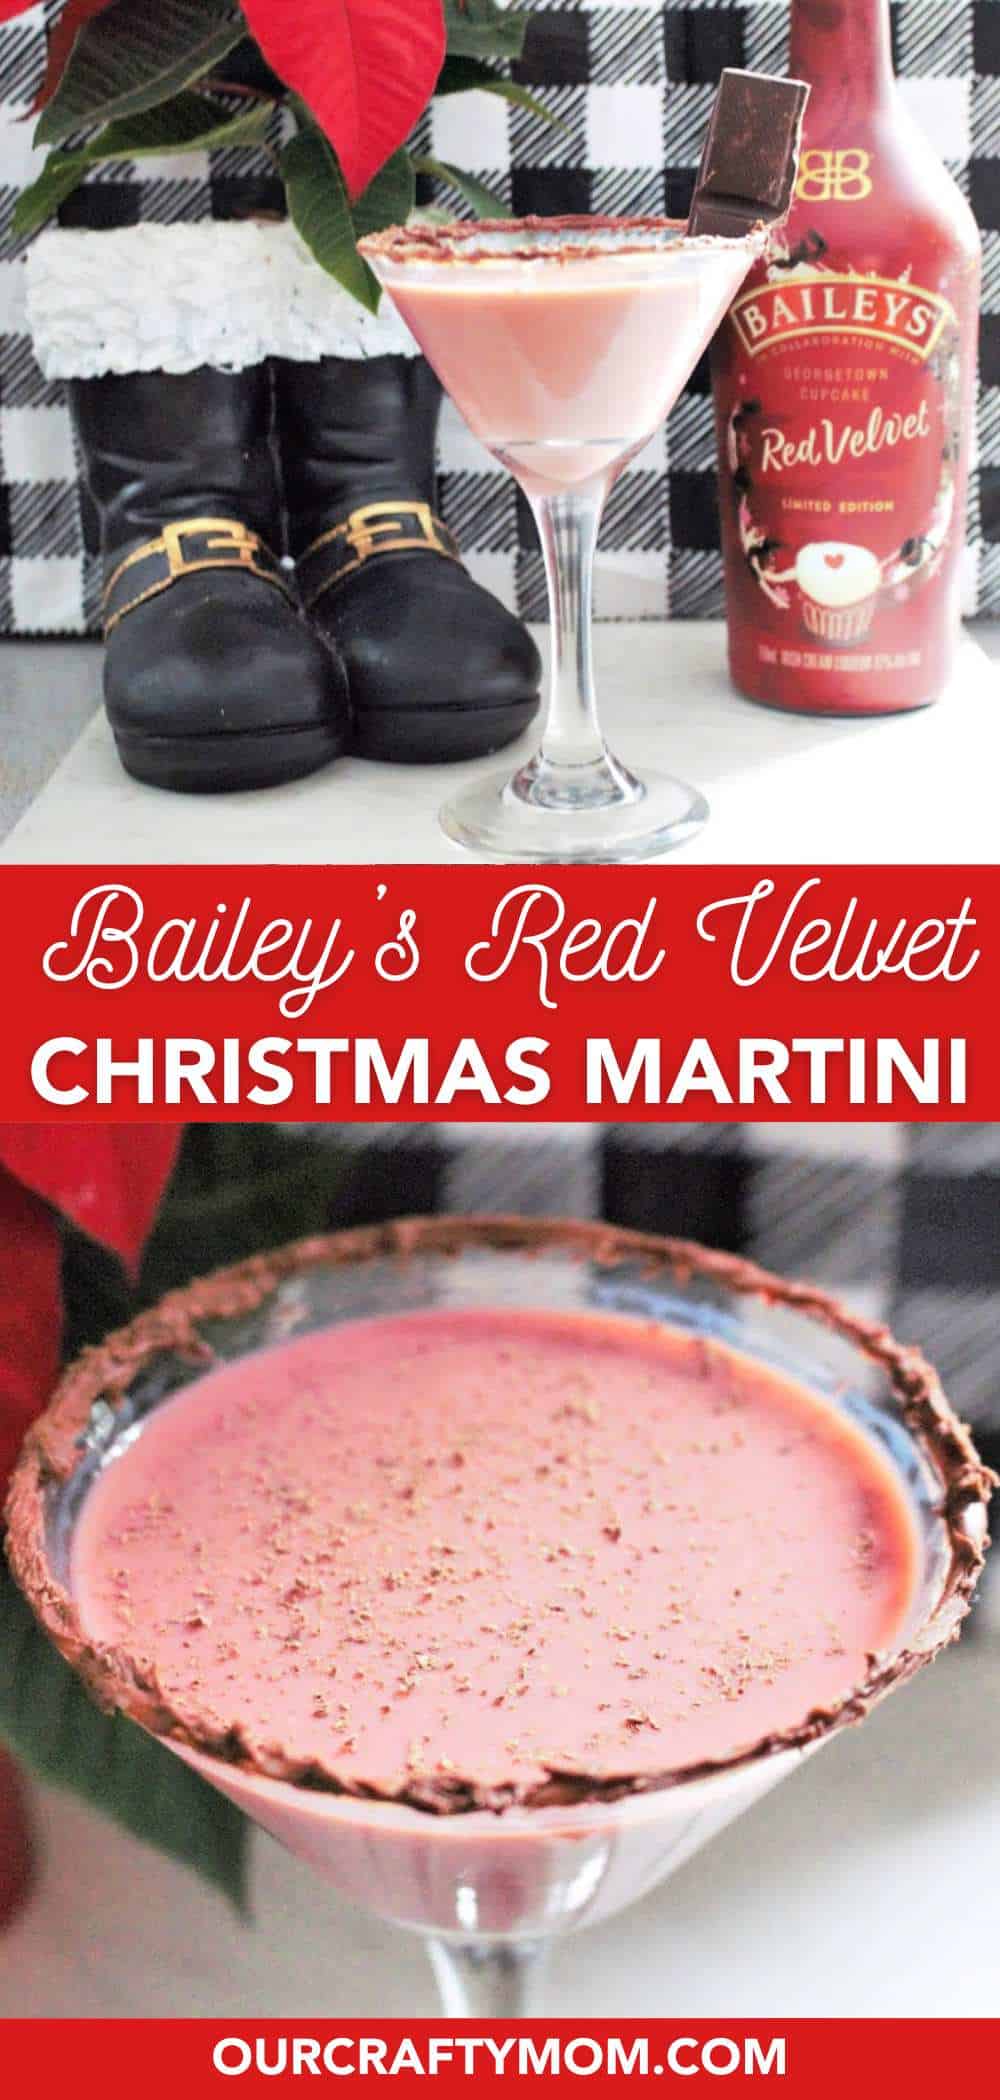 red velvet Christmas martini ingredients 